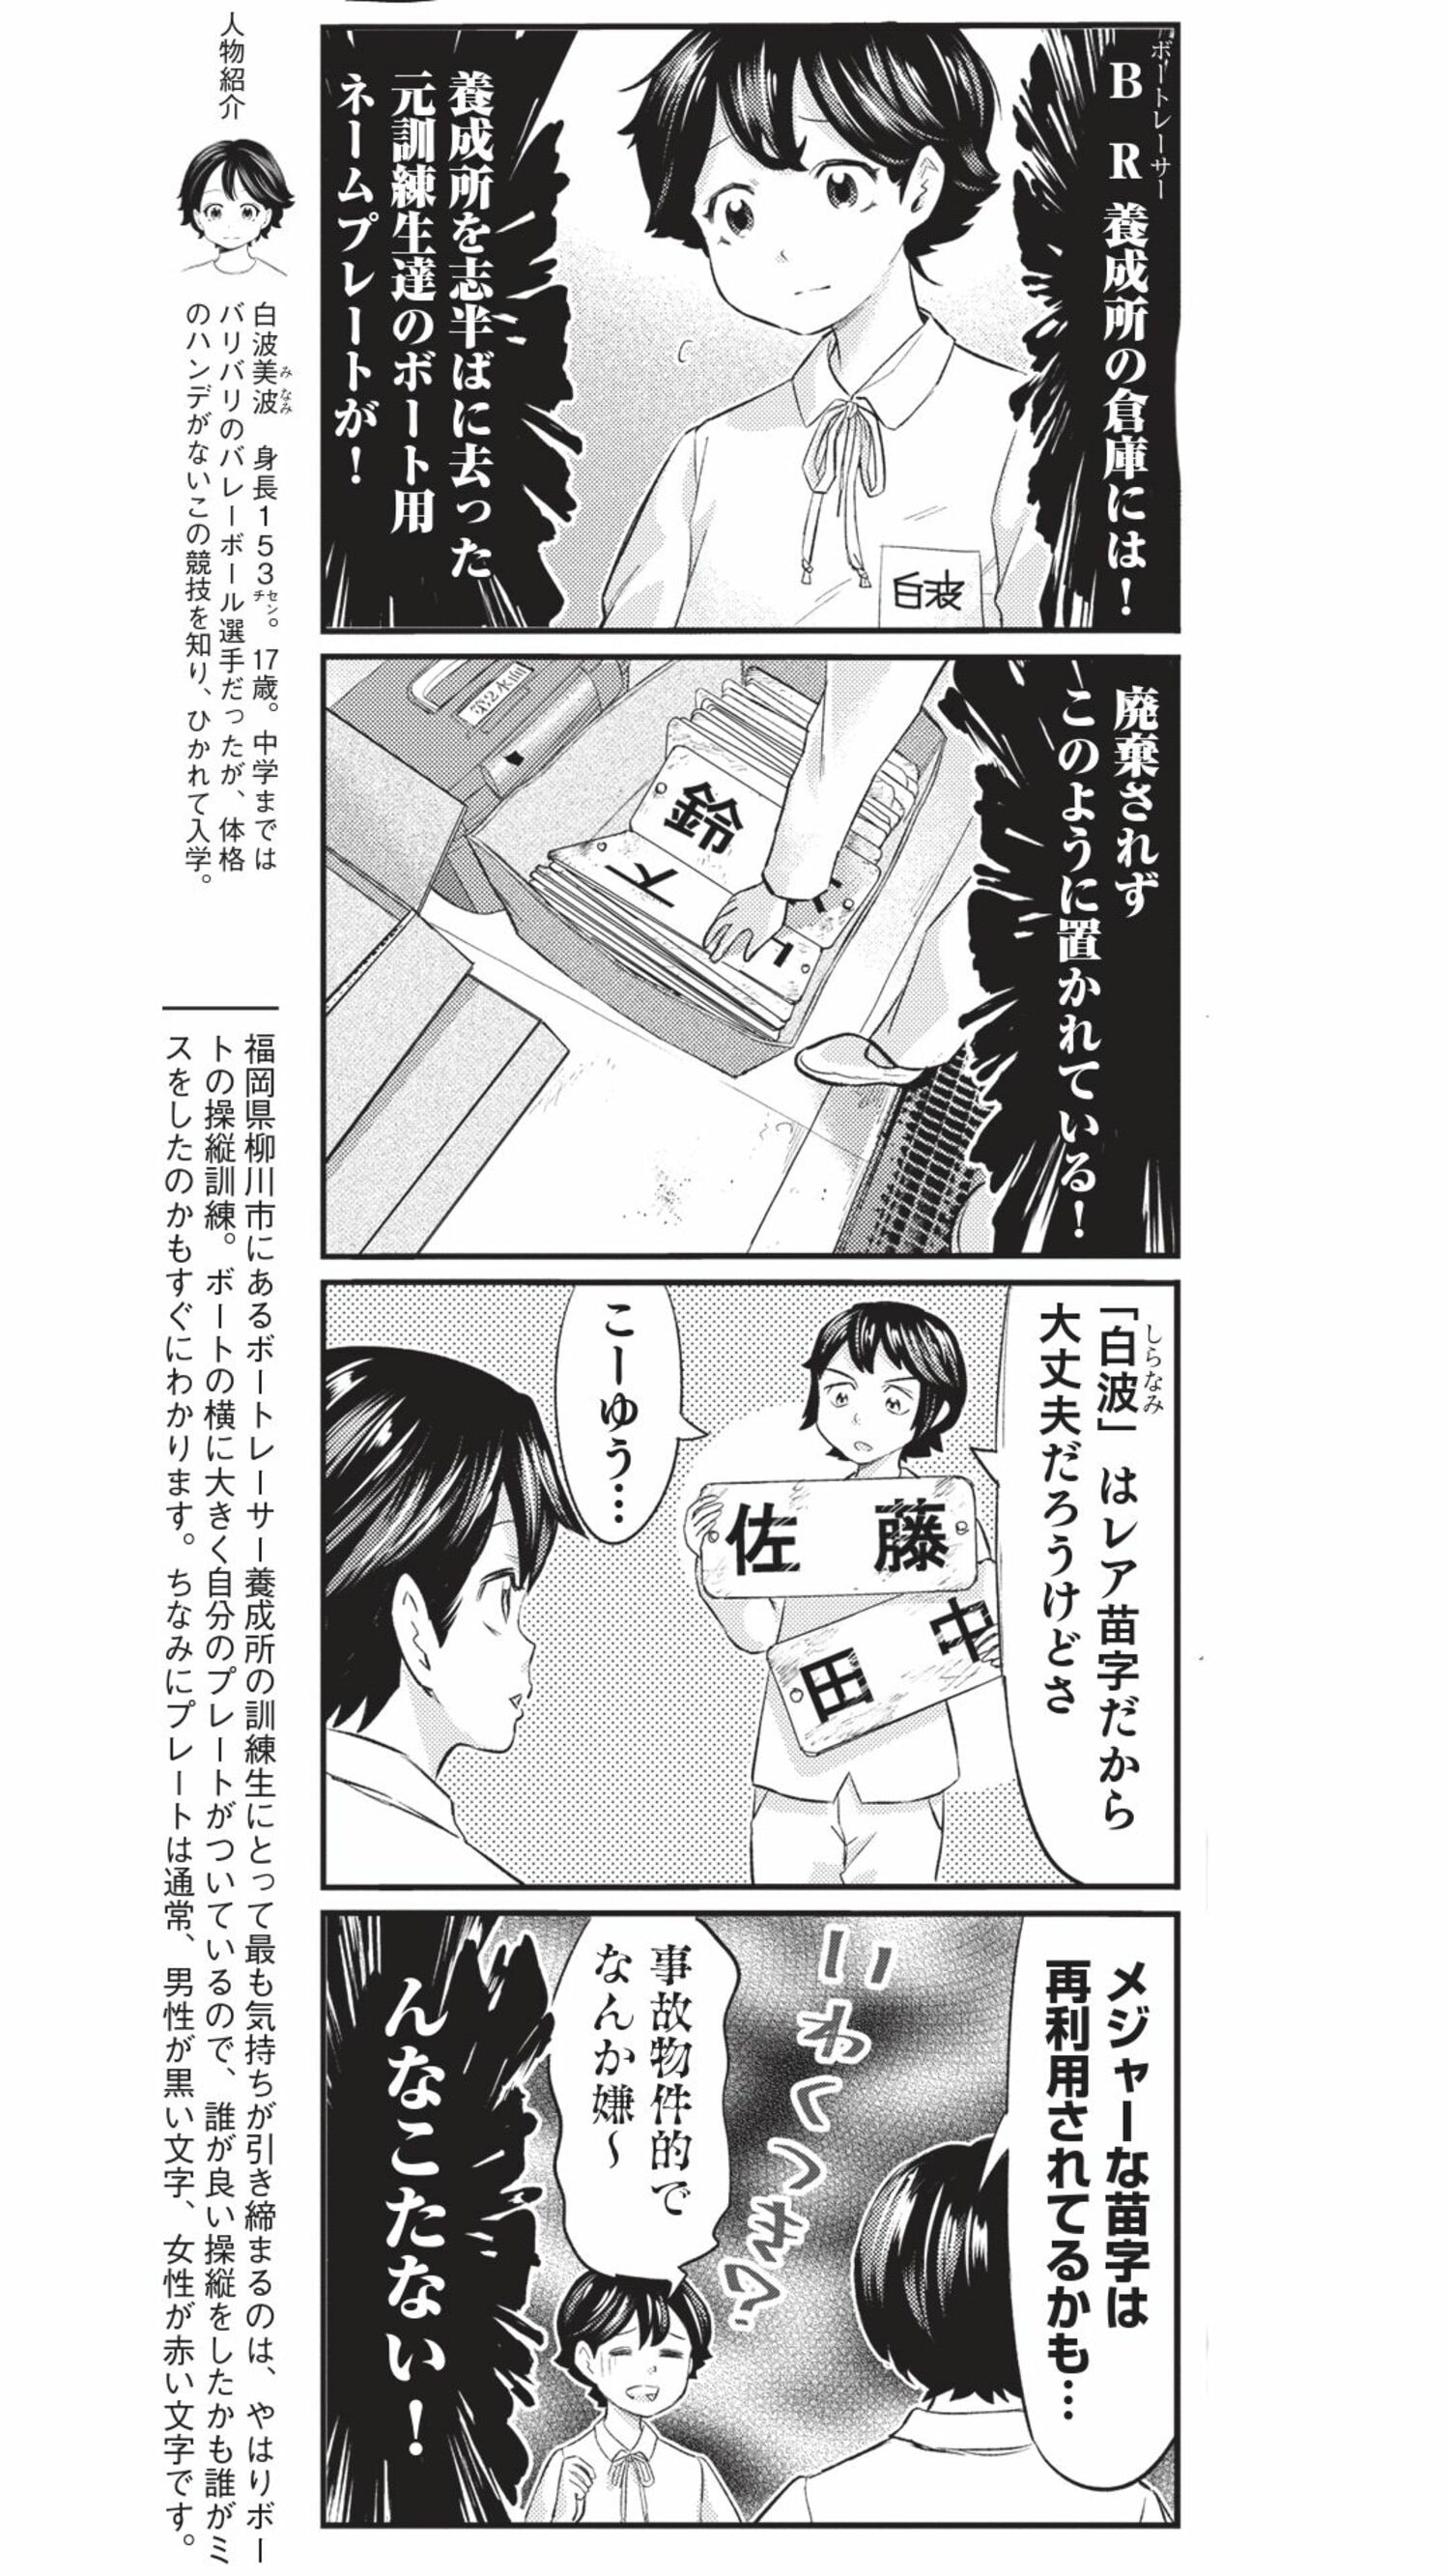 4コマ漫画『ボートレース訓練生・美波』ネームプレートのこぼれ話の画像